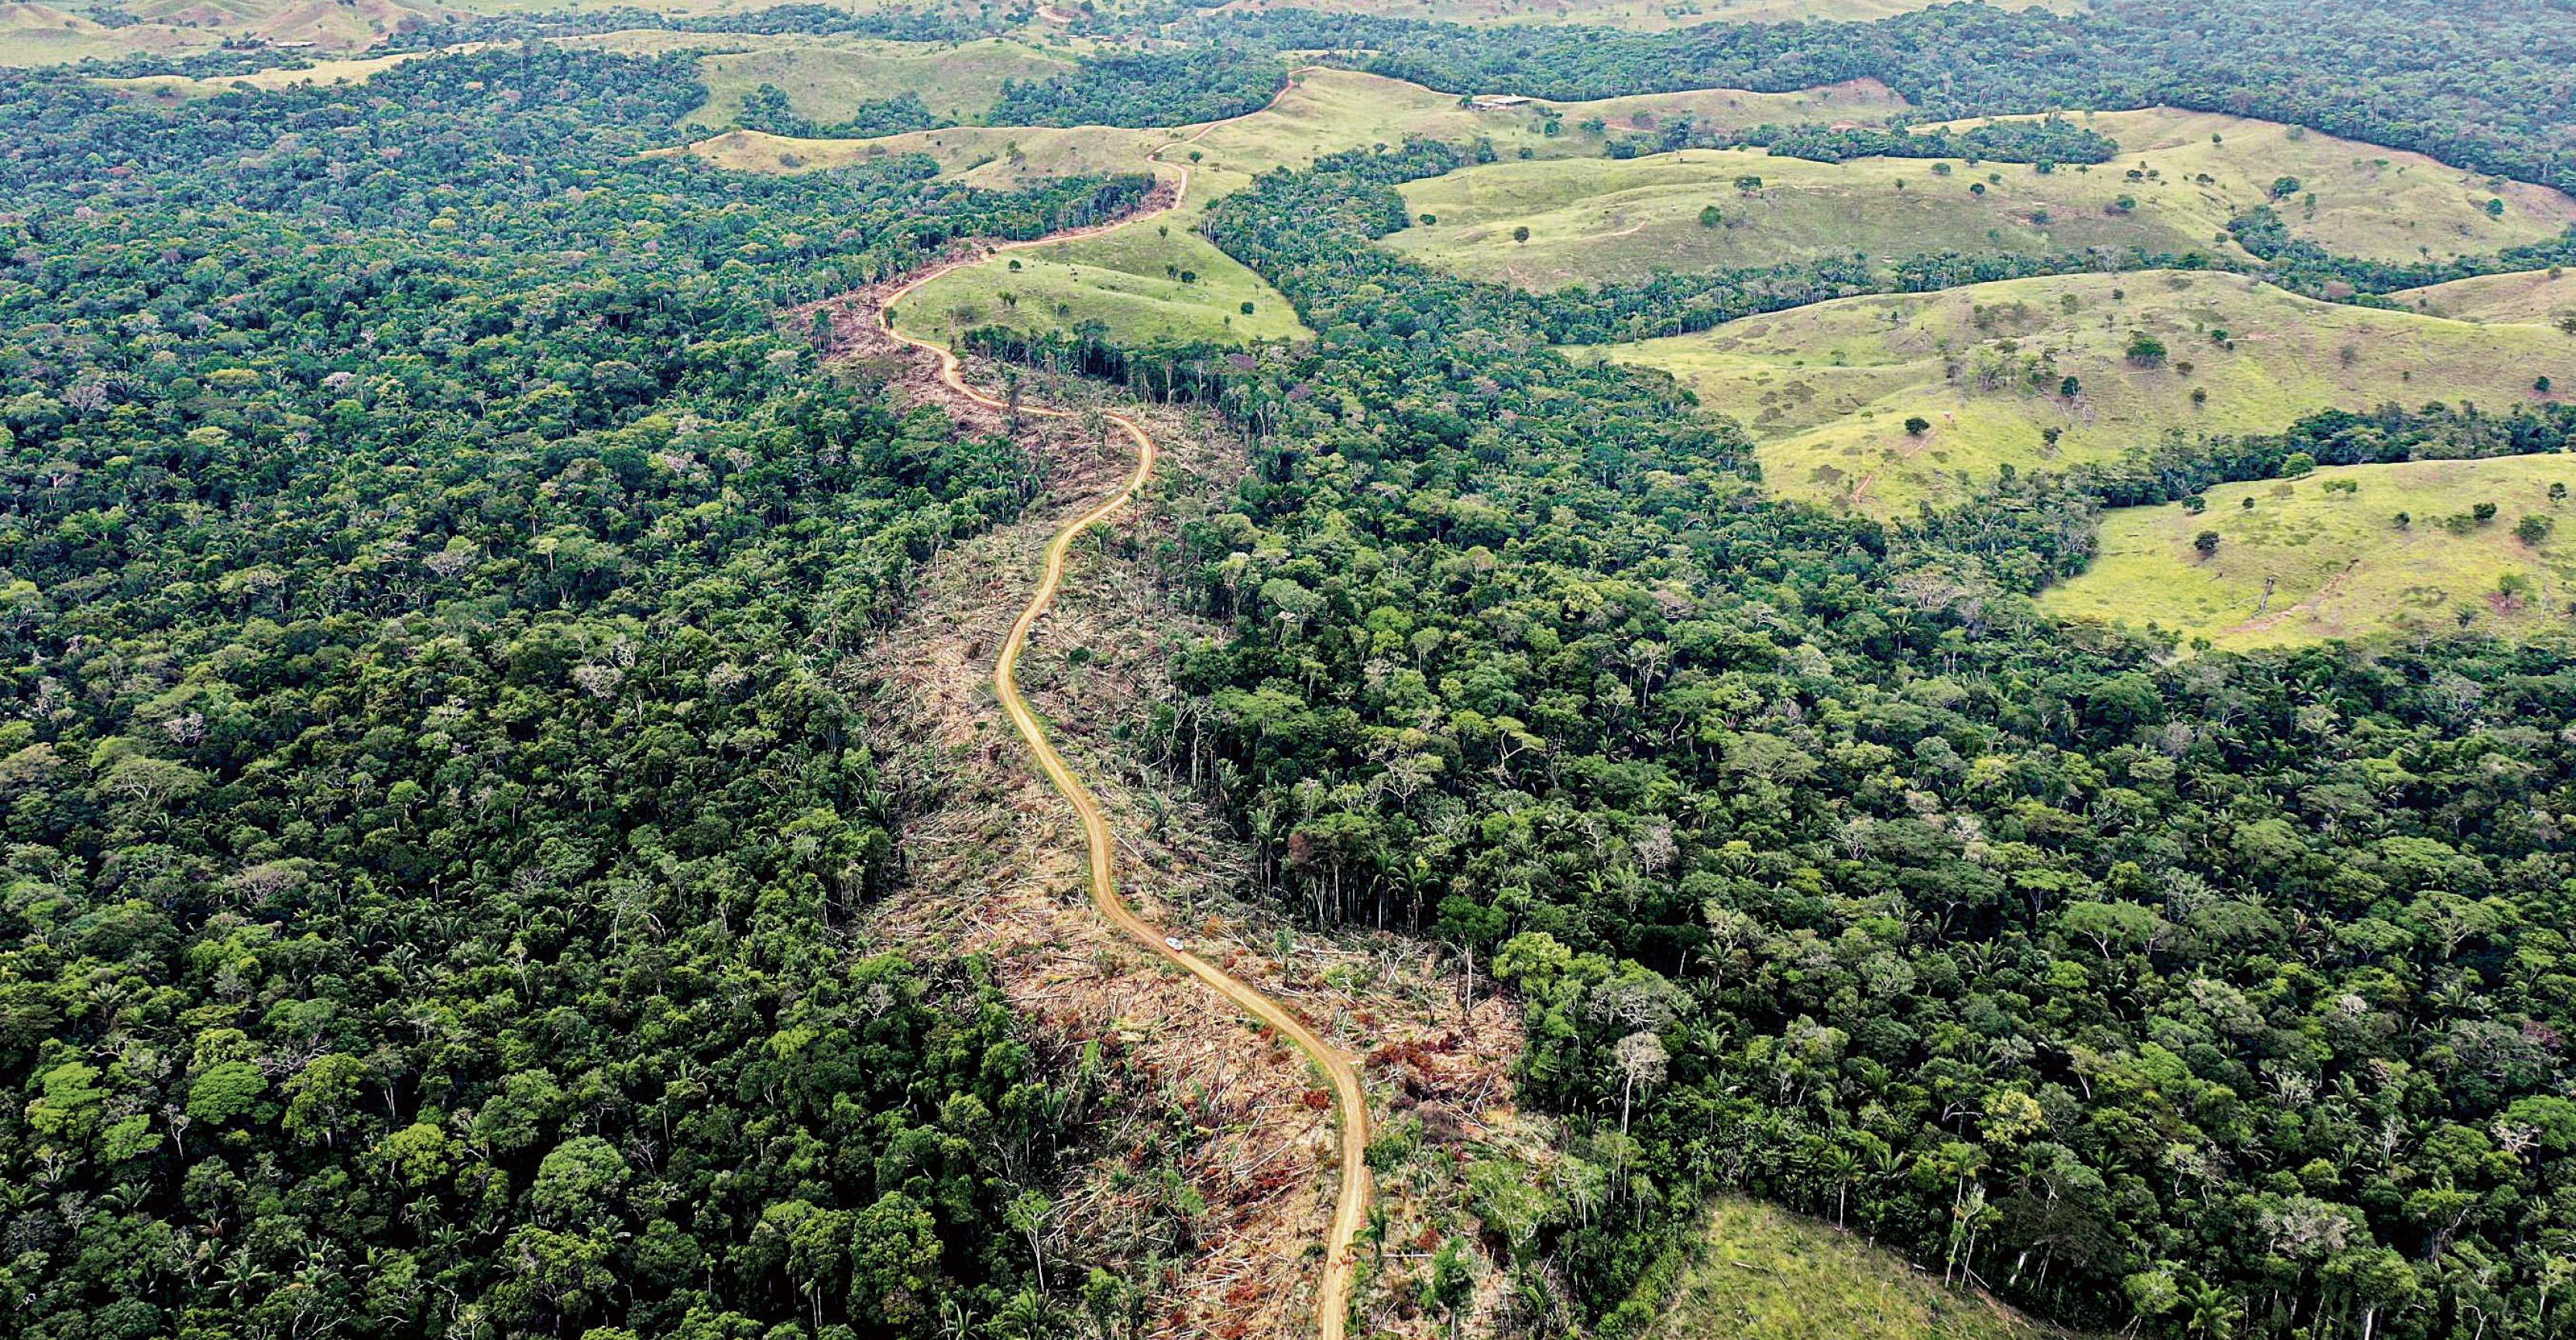 Luftaufnahme von tropischem Regenwald, durch den eine Schneise der Zerstörung verläuft.